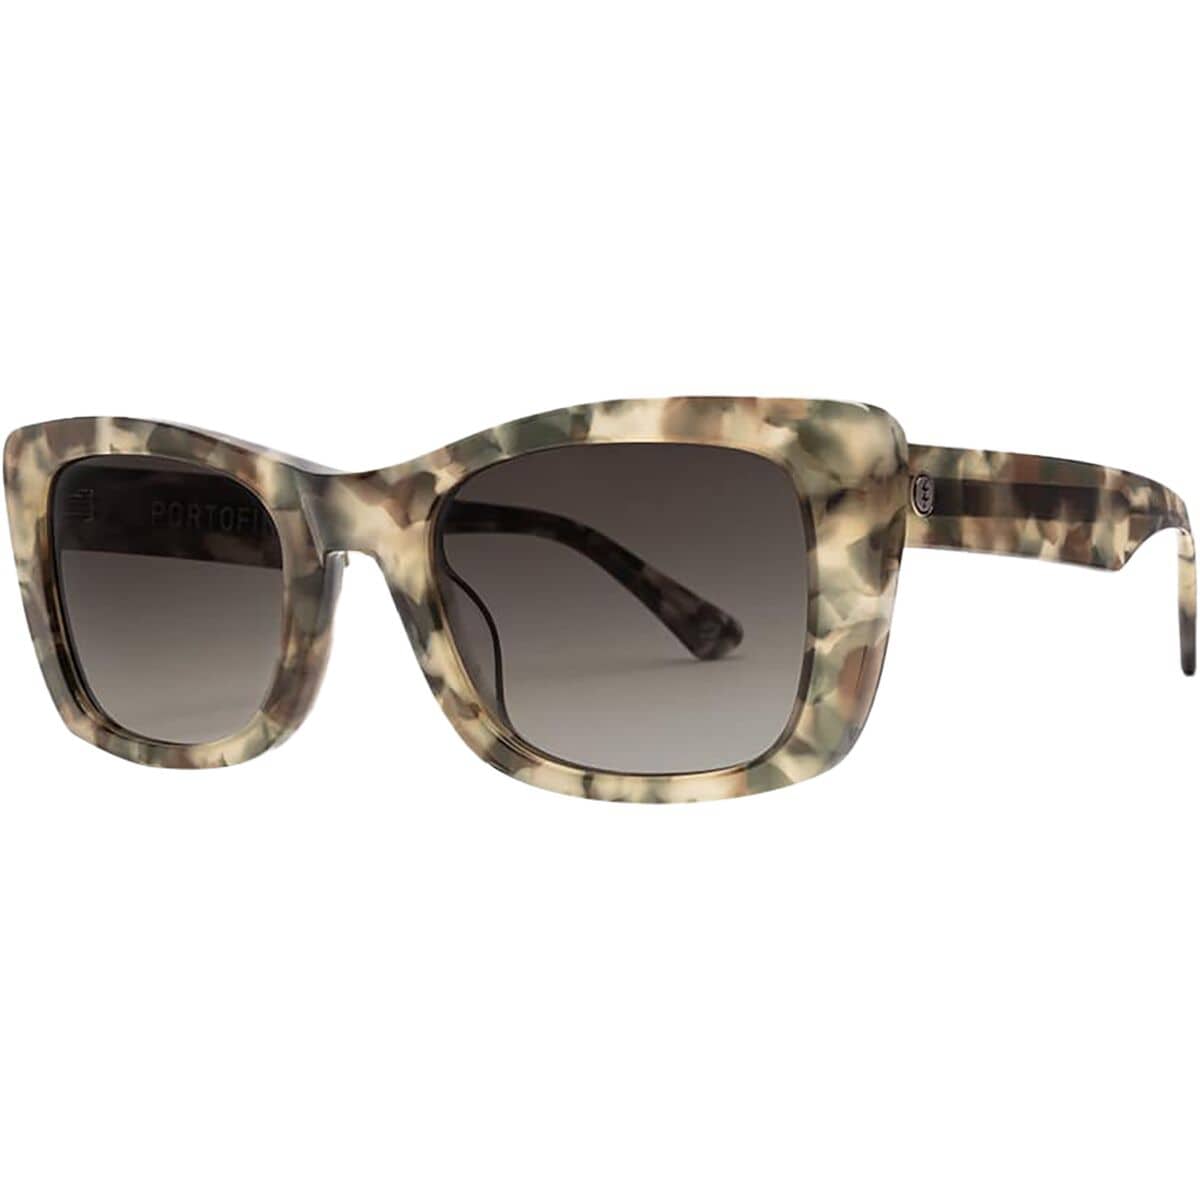 Electric Portofino Sunglasses - Women's